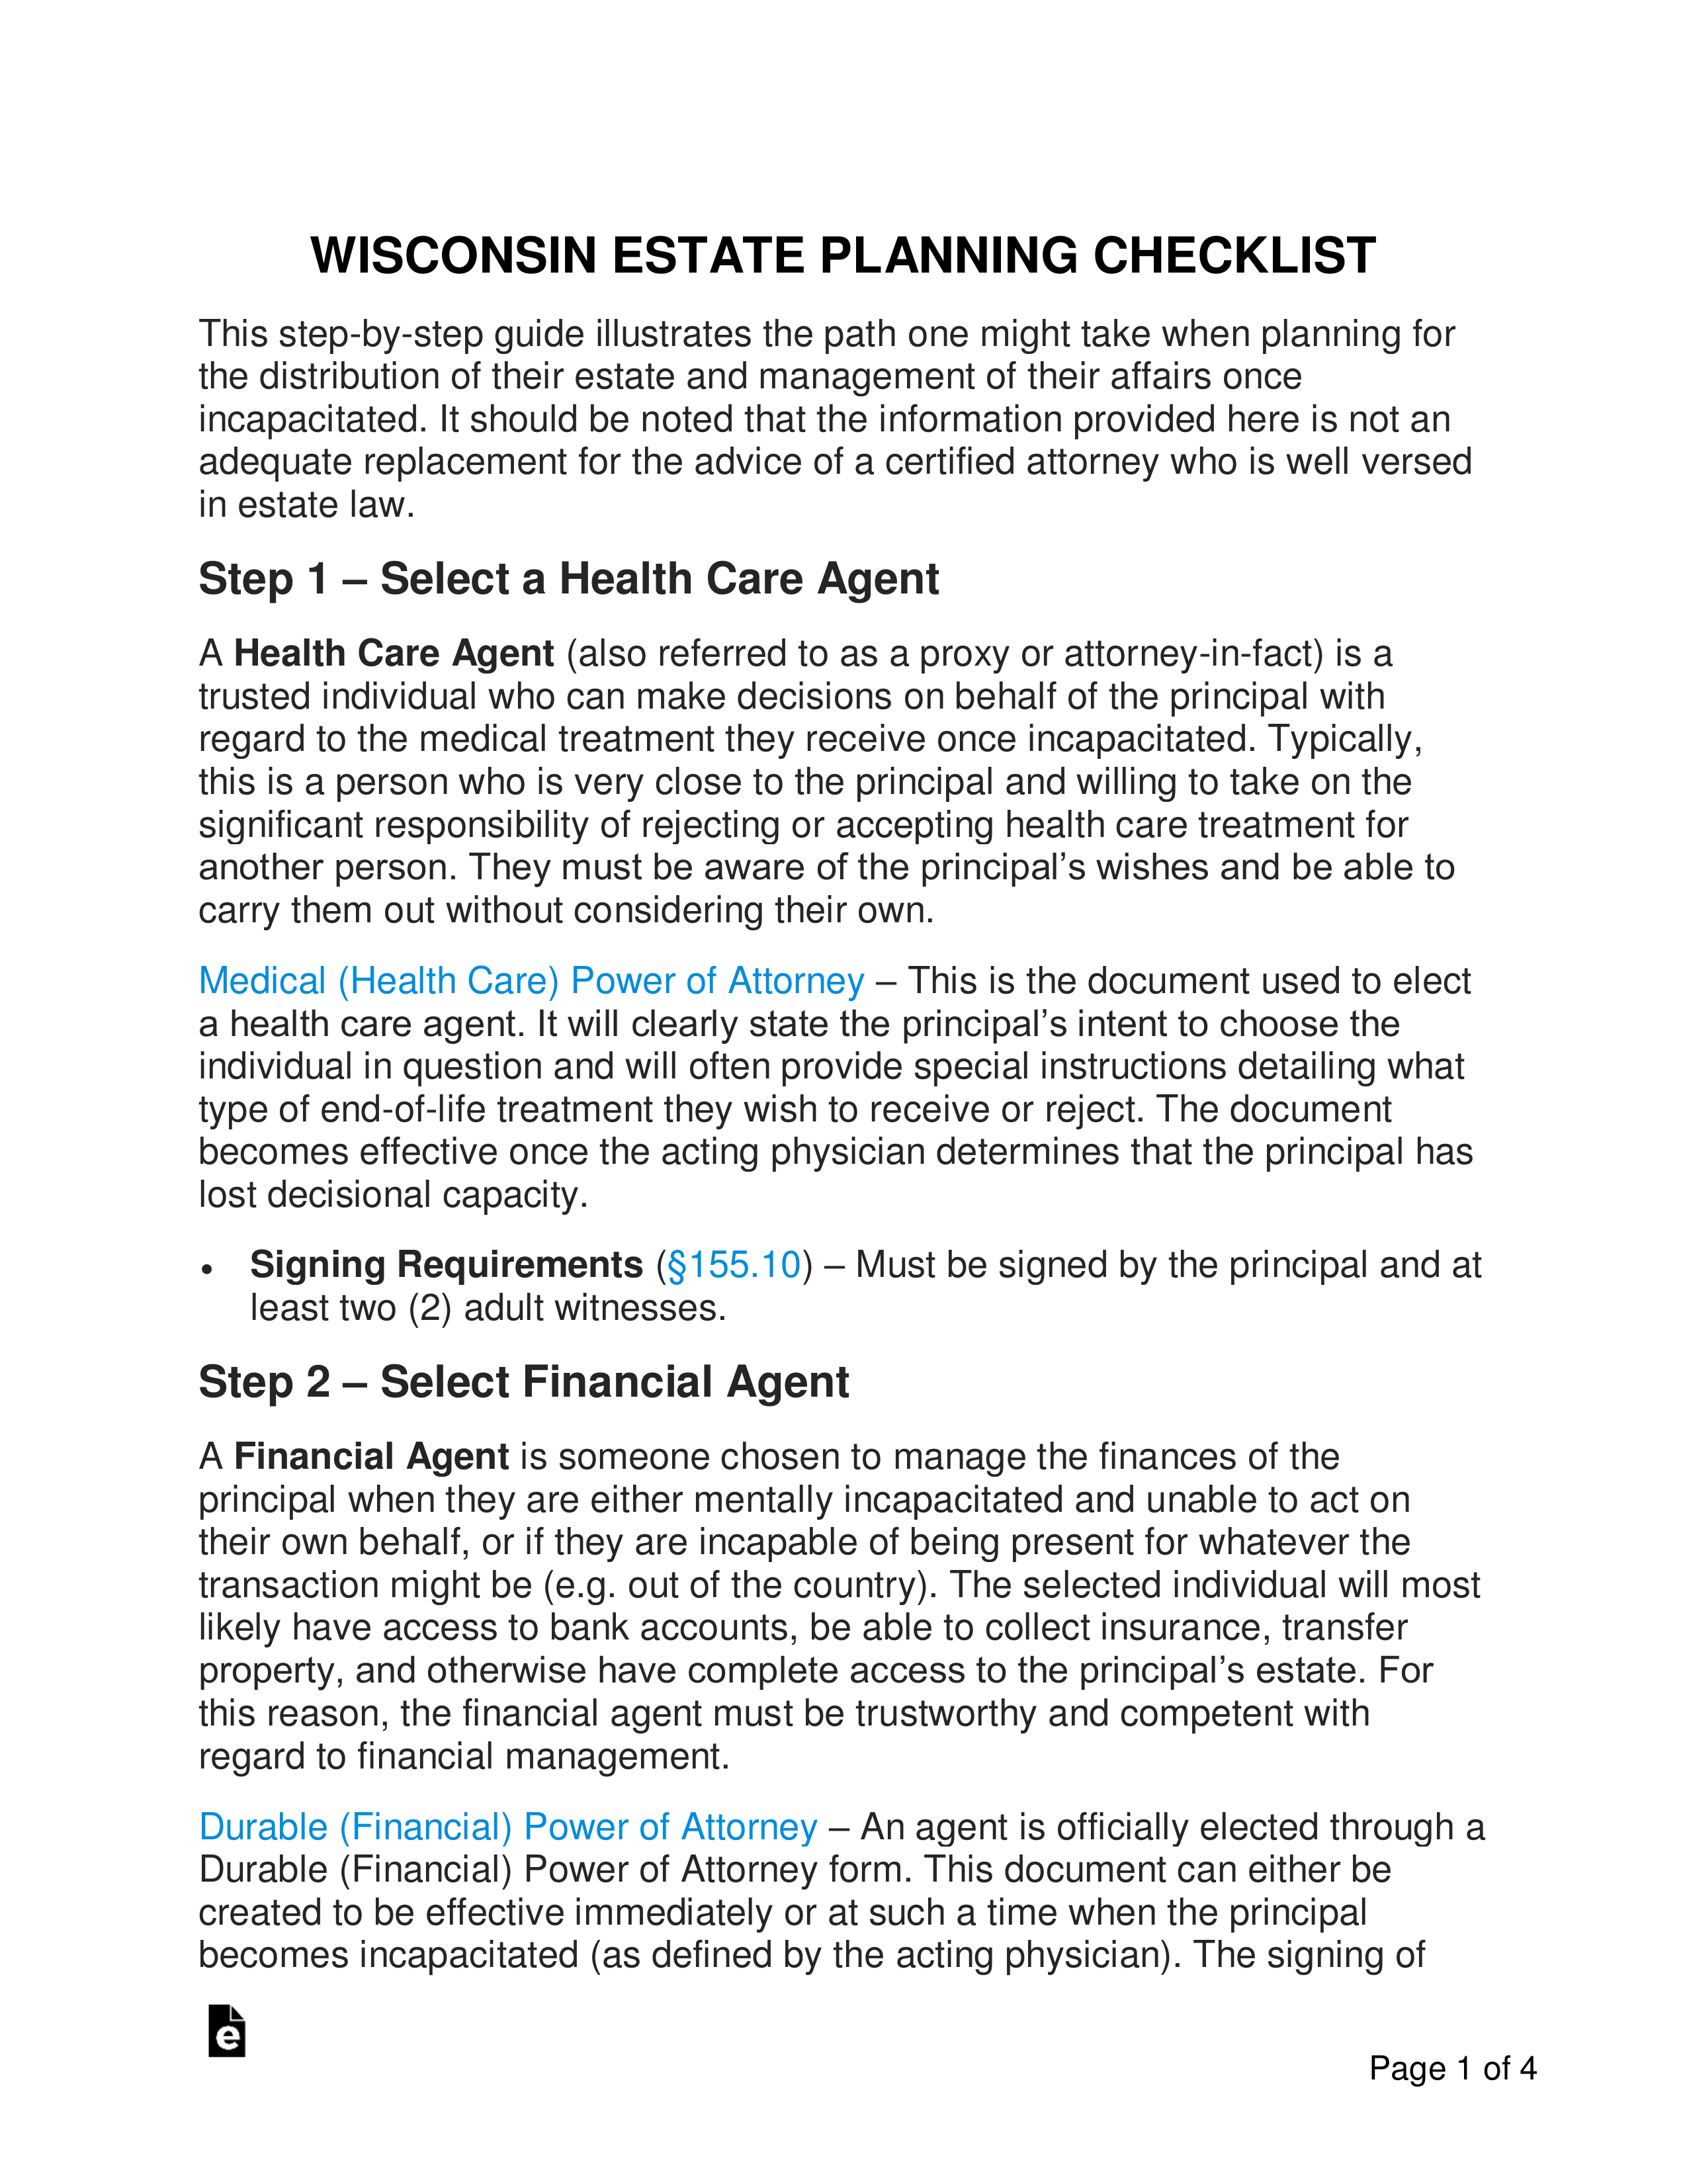 Wisconsin Estate Planning Checklist